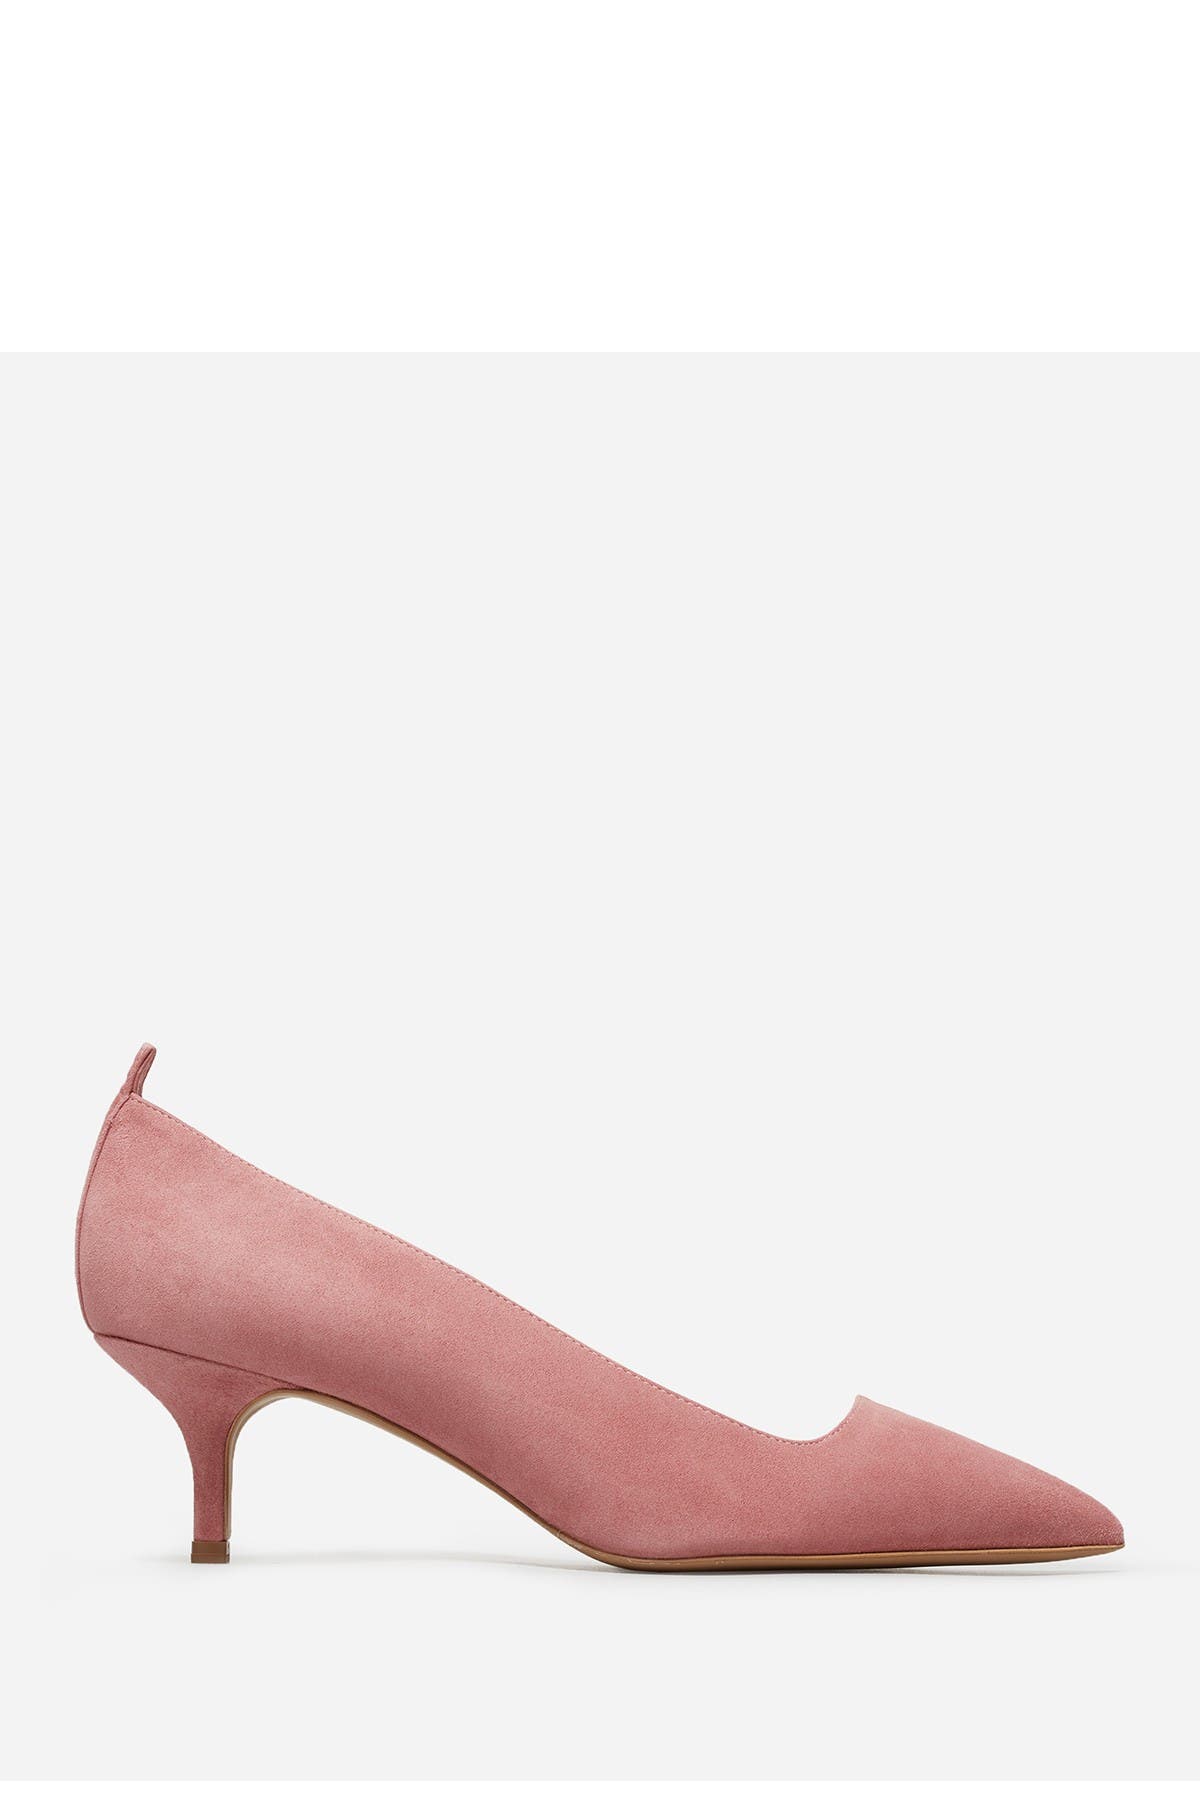 women's shoes kitten heels